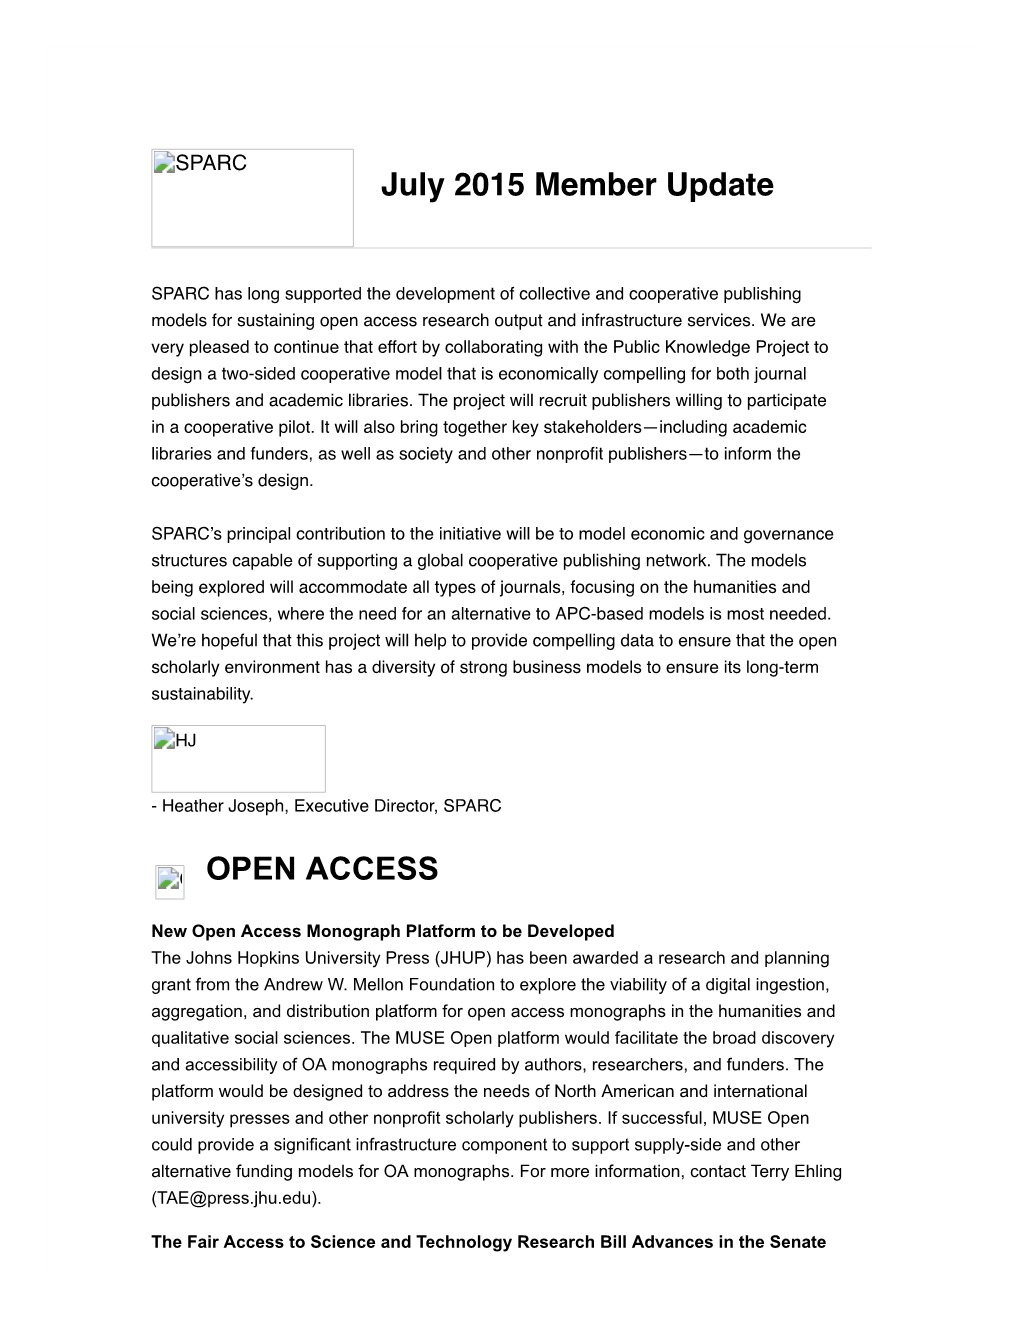 OPEN ACCESS July 2015 Member Update